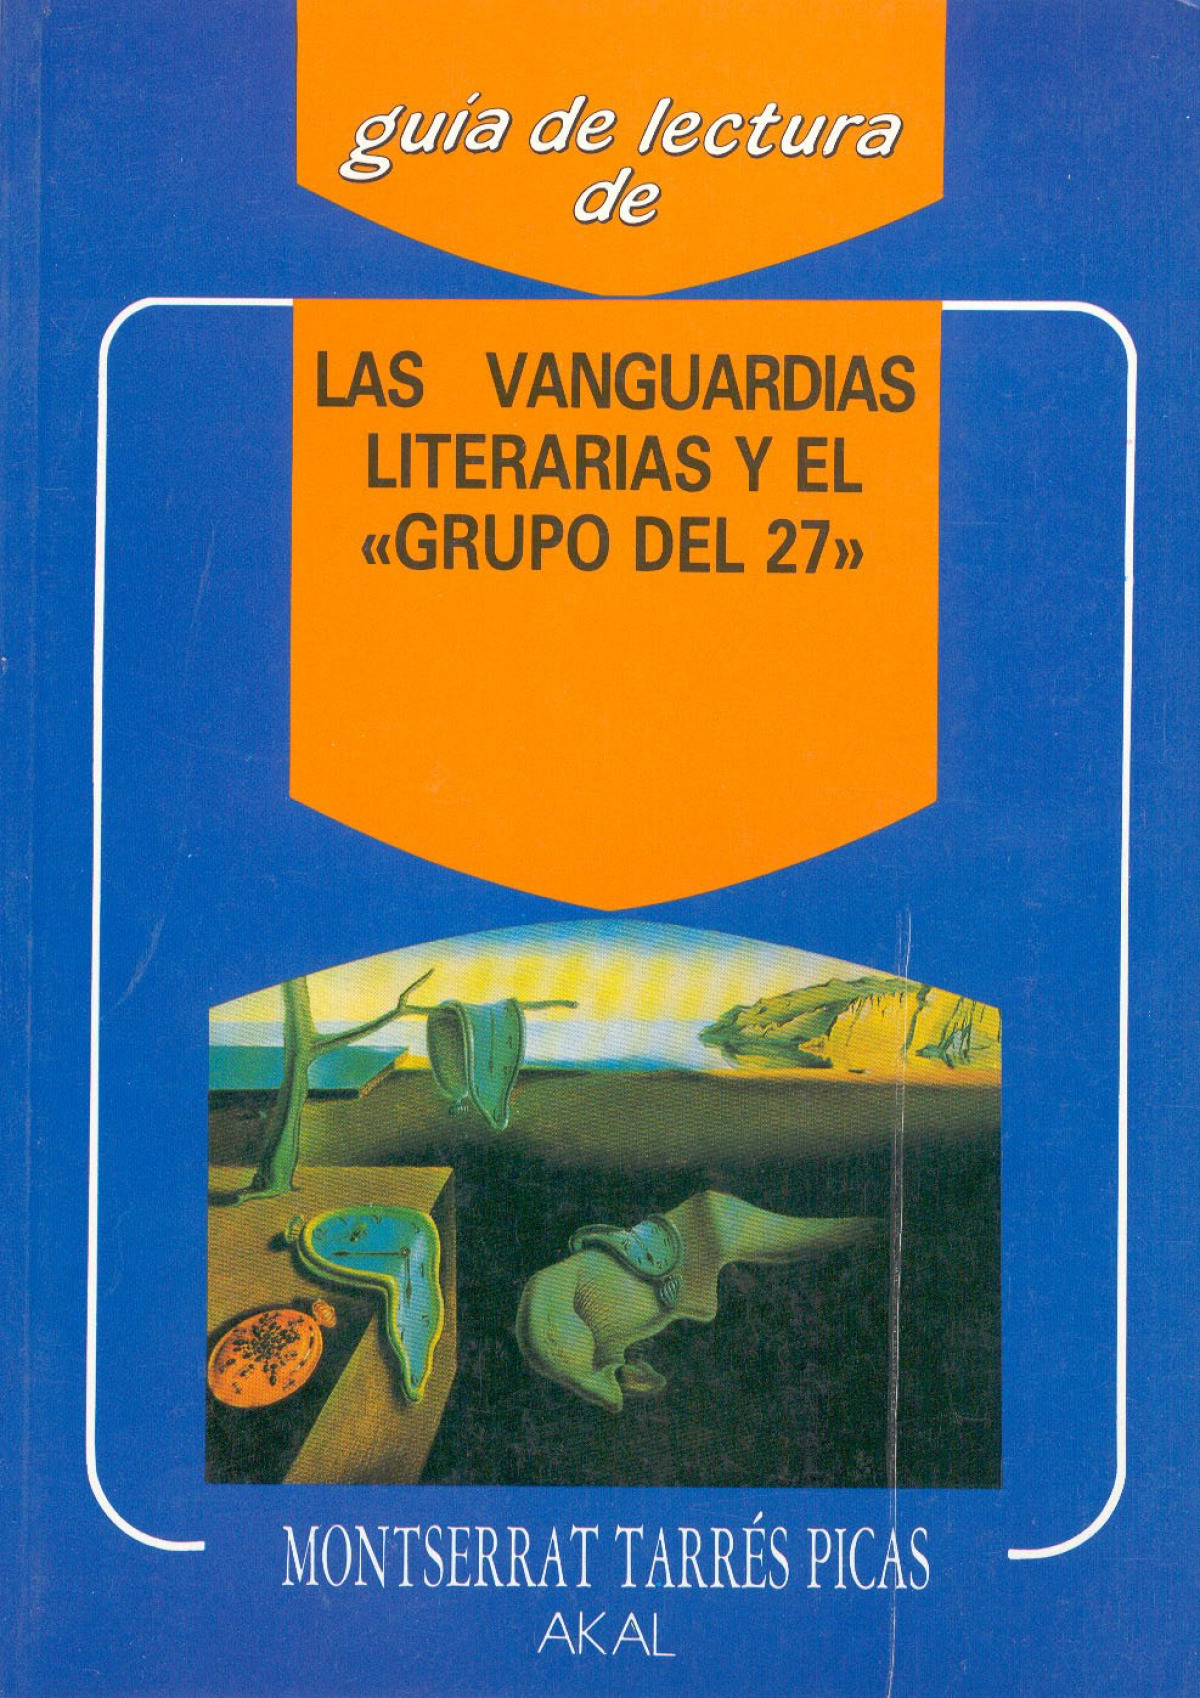 Vanguardias literarias y el grupo del 27 - Libreria Central Navarra